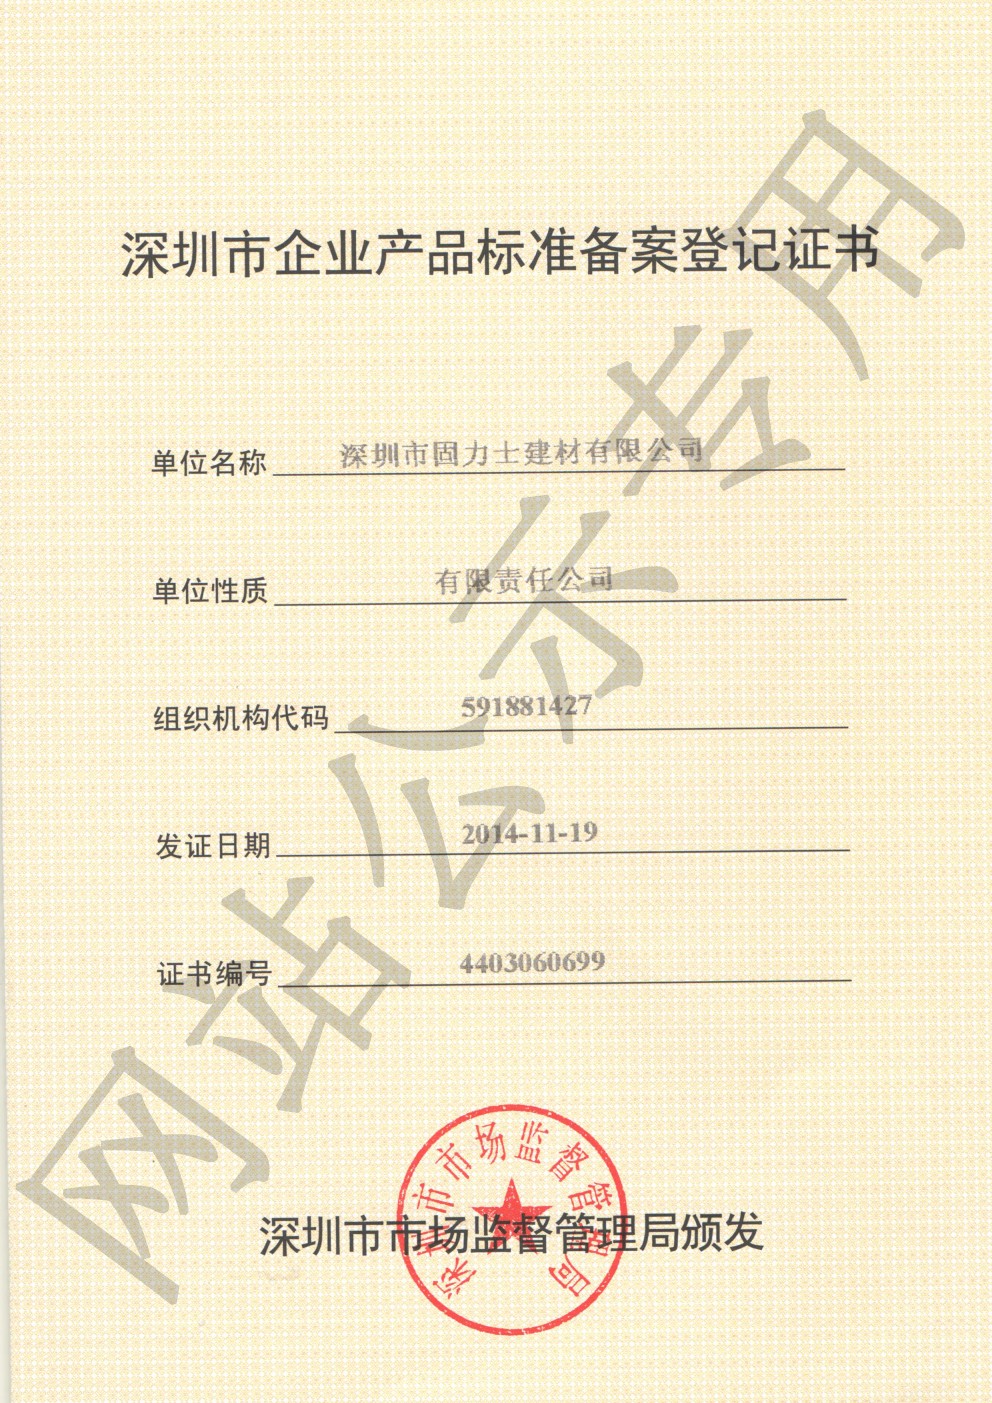 琅琊企业产品标准登记证书